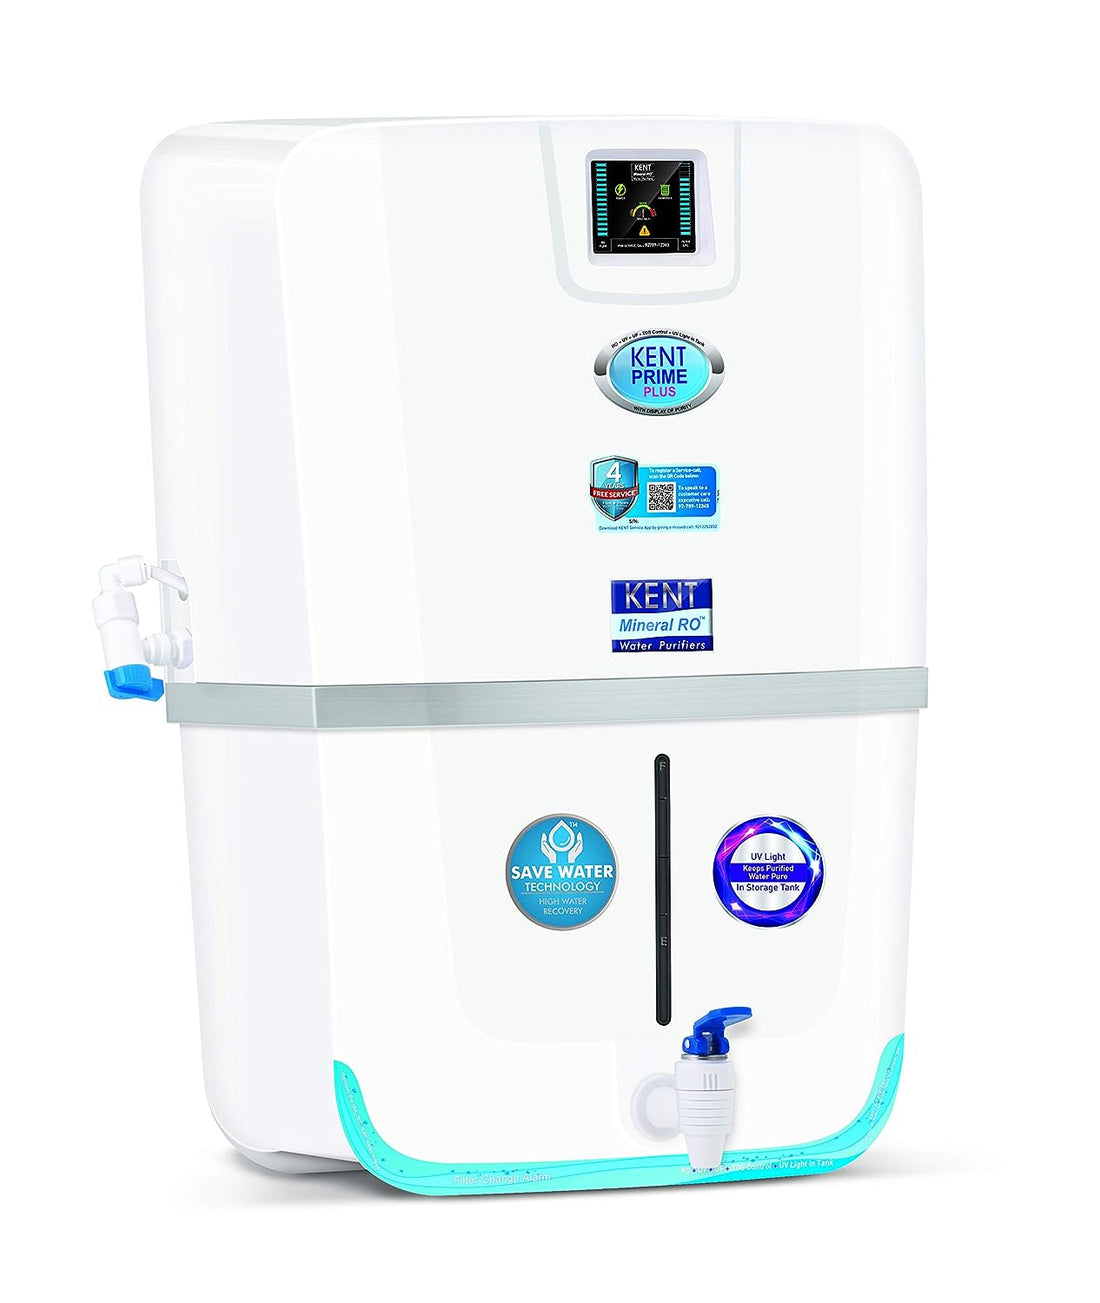 KENT 9 Liter Prime Plus RO+UV+UF+TDS Water Purifier